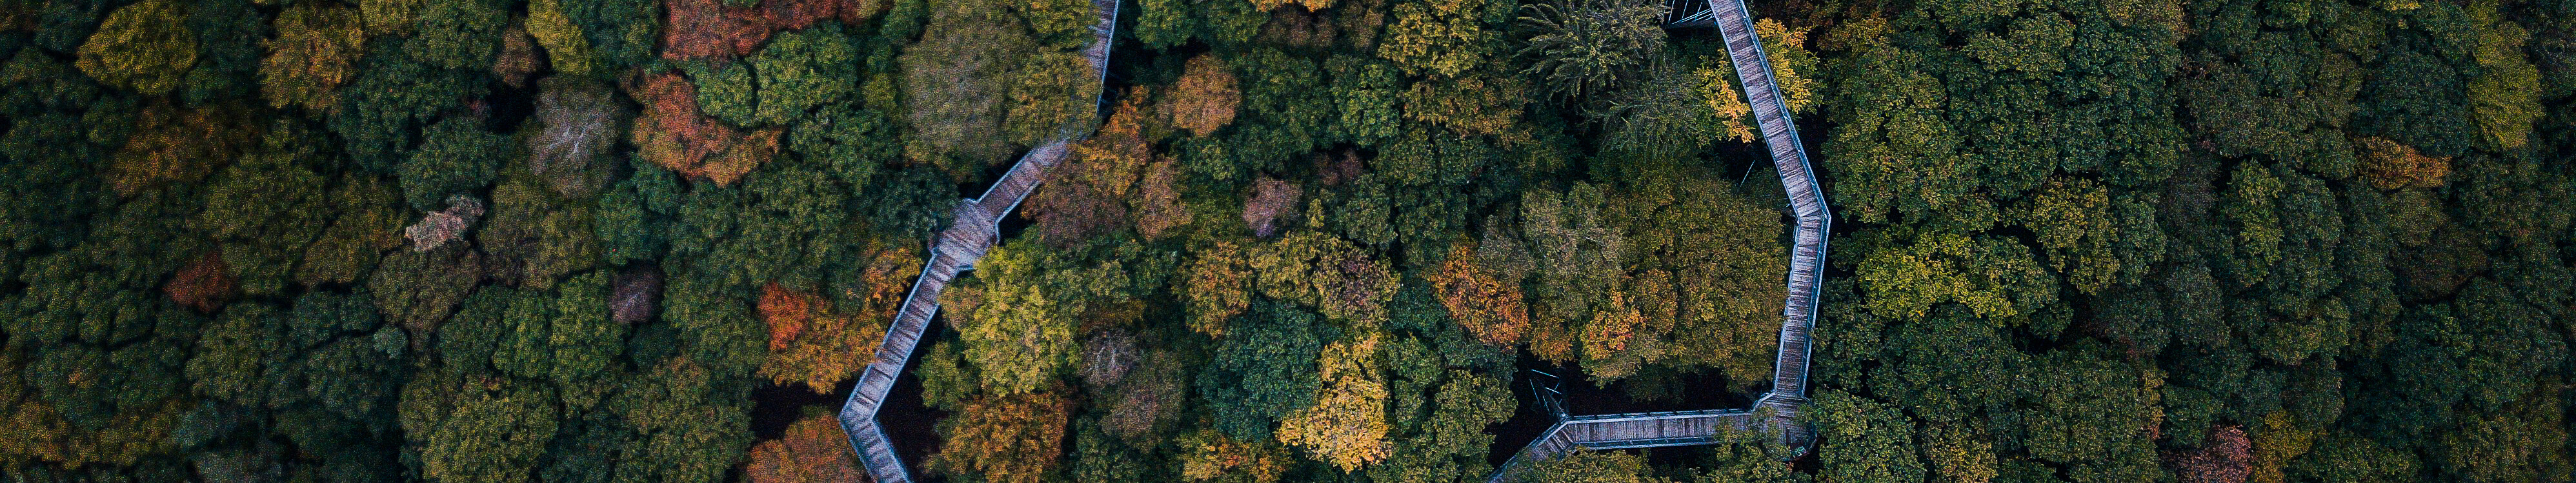 Blick von oben auf den schmalzen Holzsteg des Panarbora Baumwipfelpfads, der sich durch den Wald schlängelt. 